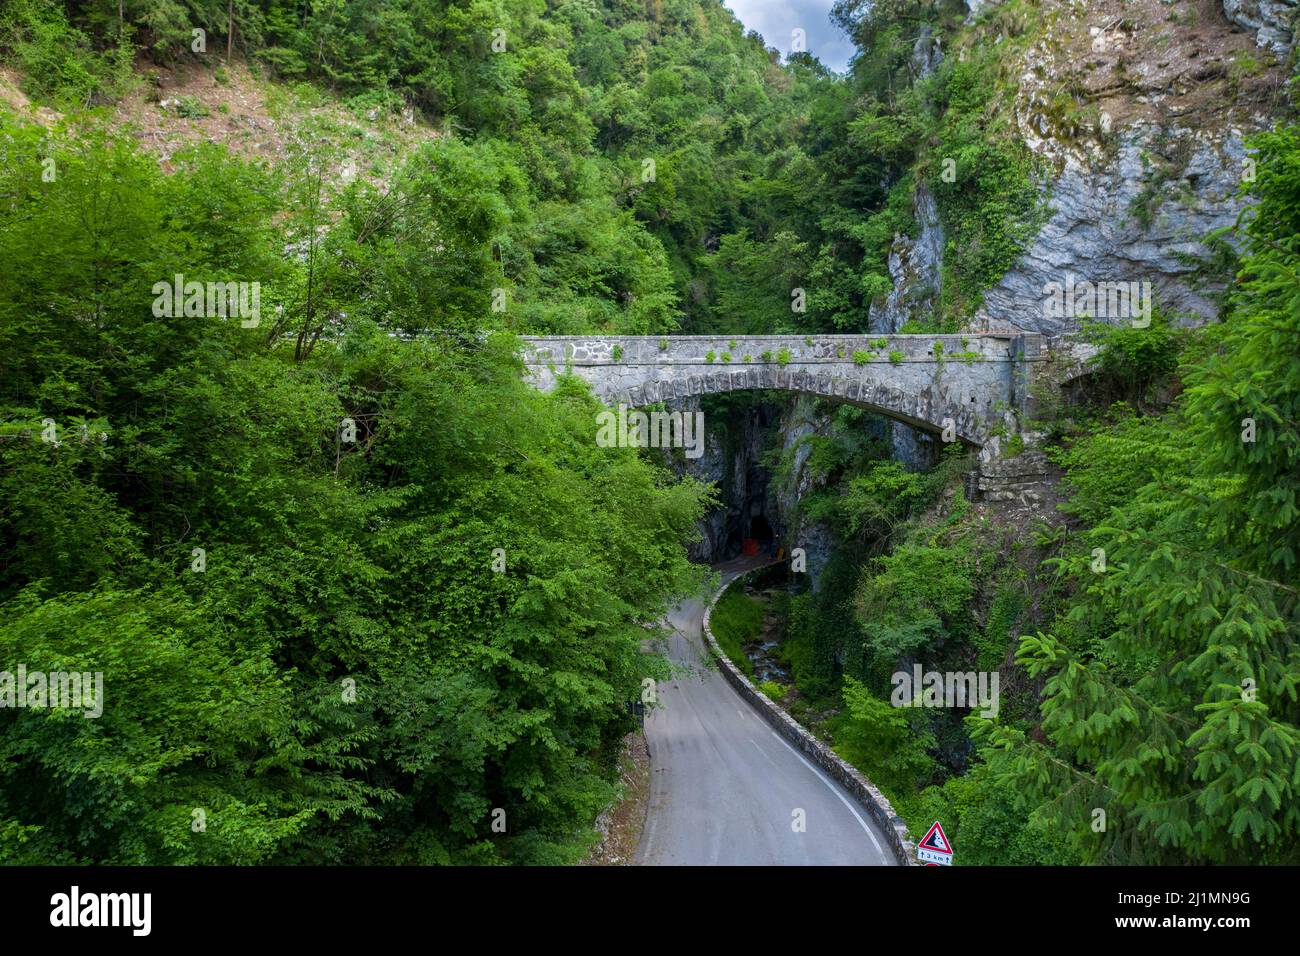 A bridge crosses the road  Strada della Forra, Tremosine, Lake Garda, Lombardy, Italy, Europe Stock Photo